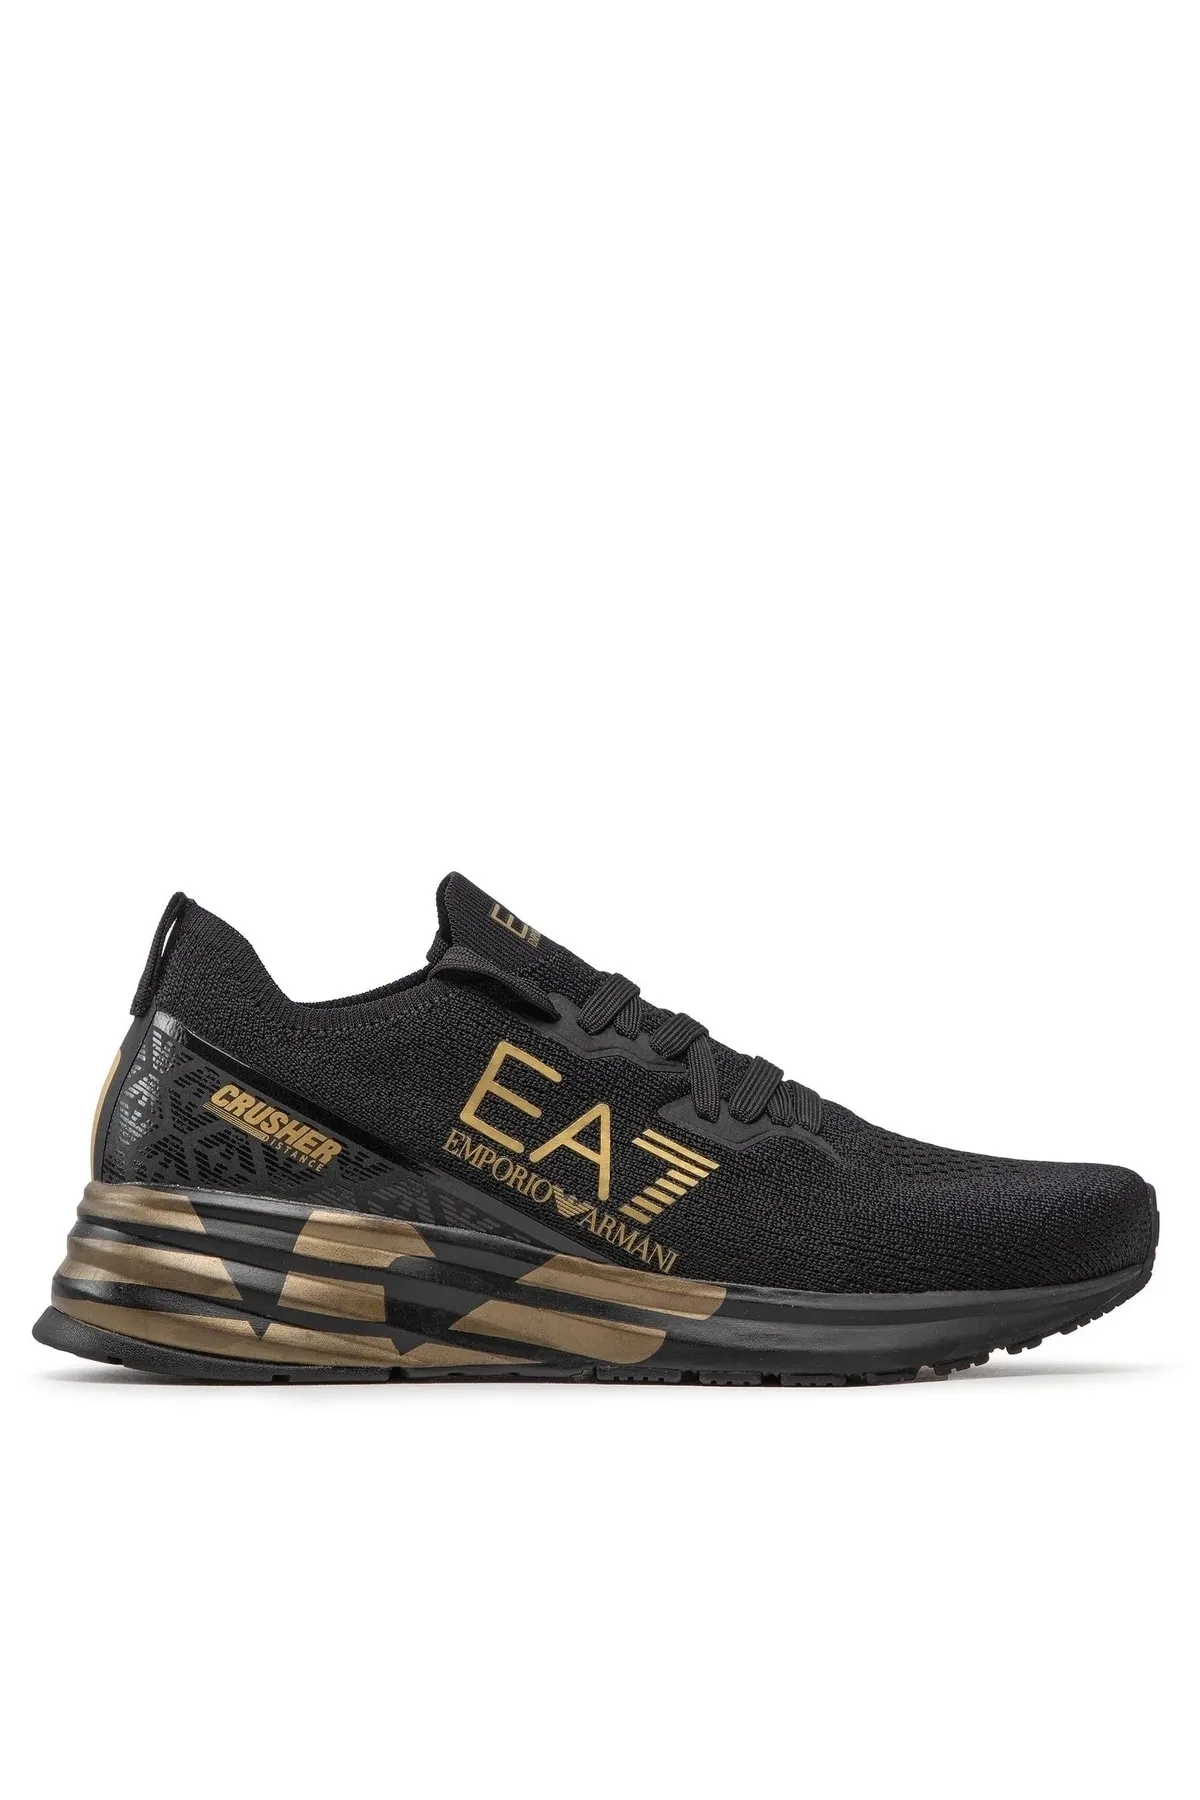 EA7 - Erkek Sneaker-Siyah